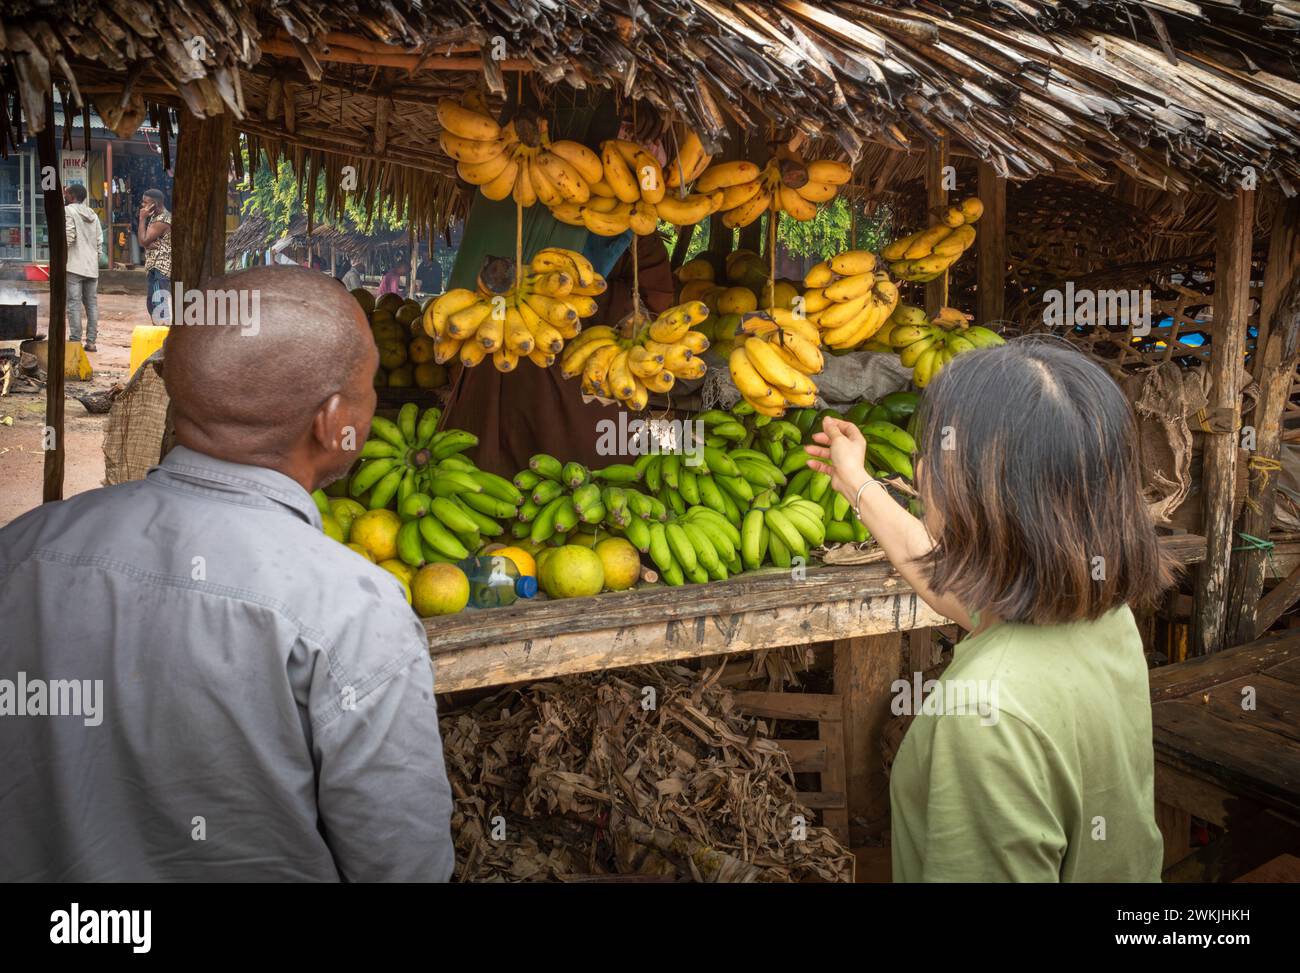 Une touriste étrangère et son guide local achètent des bananes au marché de Msanga, en Tanzanie rurale Banque D'Images